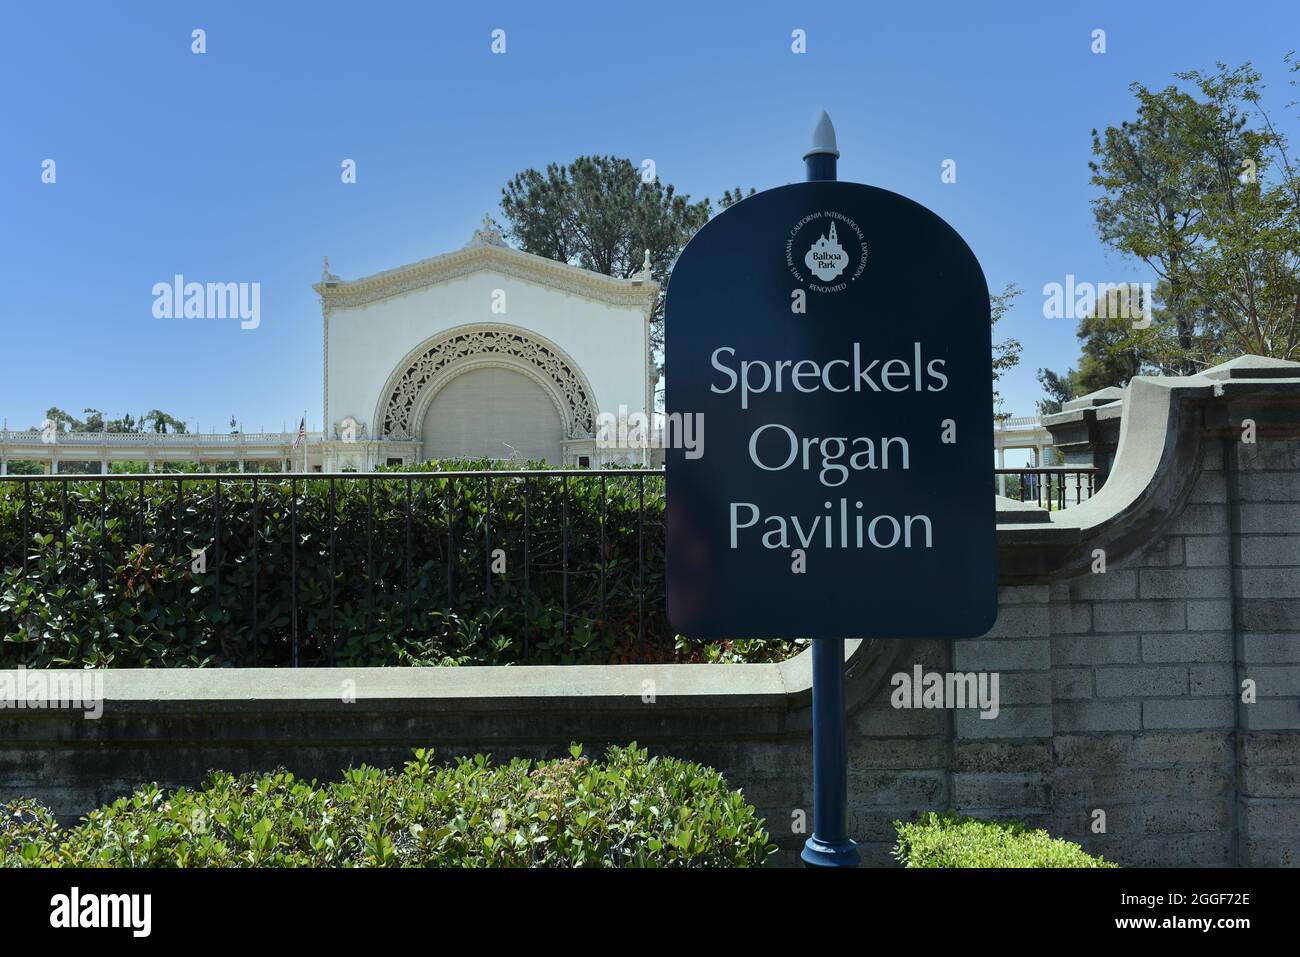 SAN DIEGO, CALIFORNIE - 25 AOÛT 2021 : le Spreckels Organ Pavilion, situé dans le parc de Balboa, abrite le plus grand orgue extérieur du monde. Banque D'Images